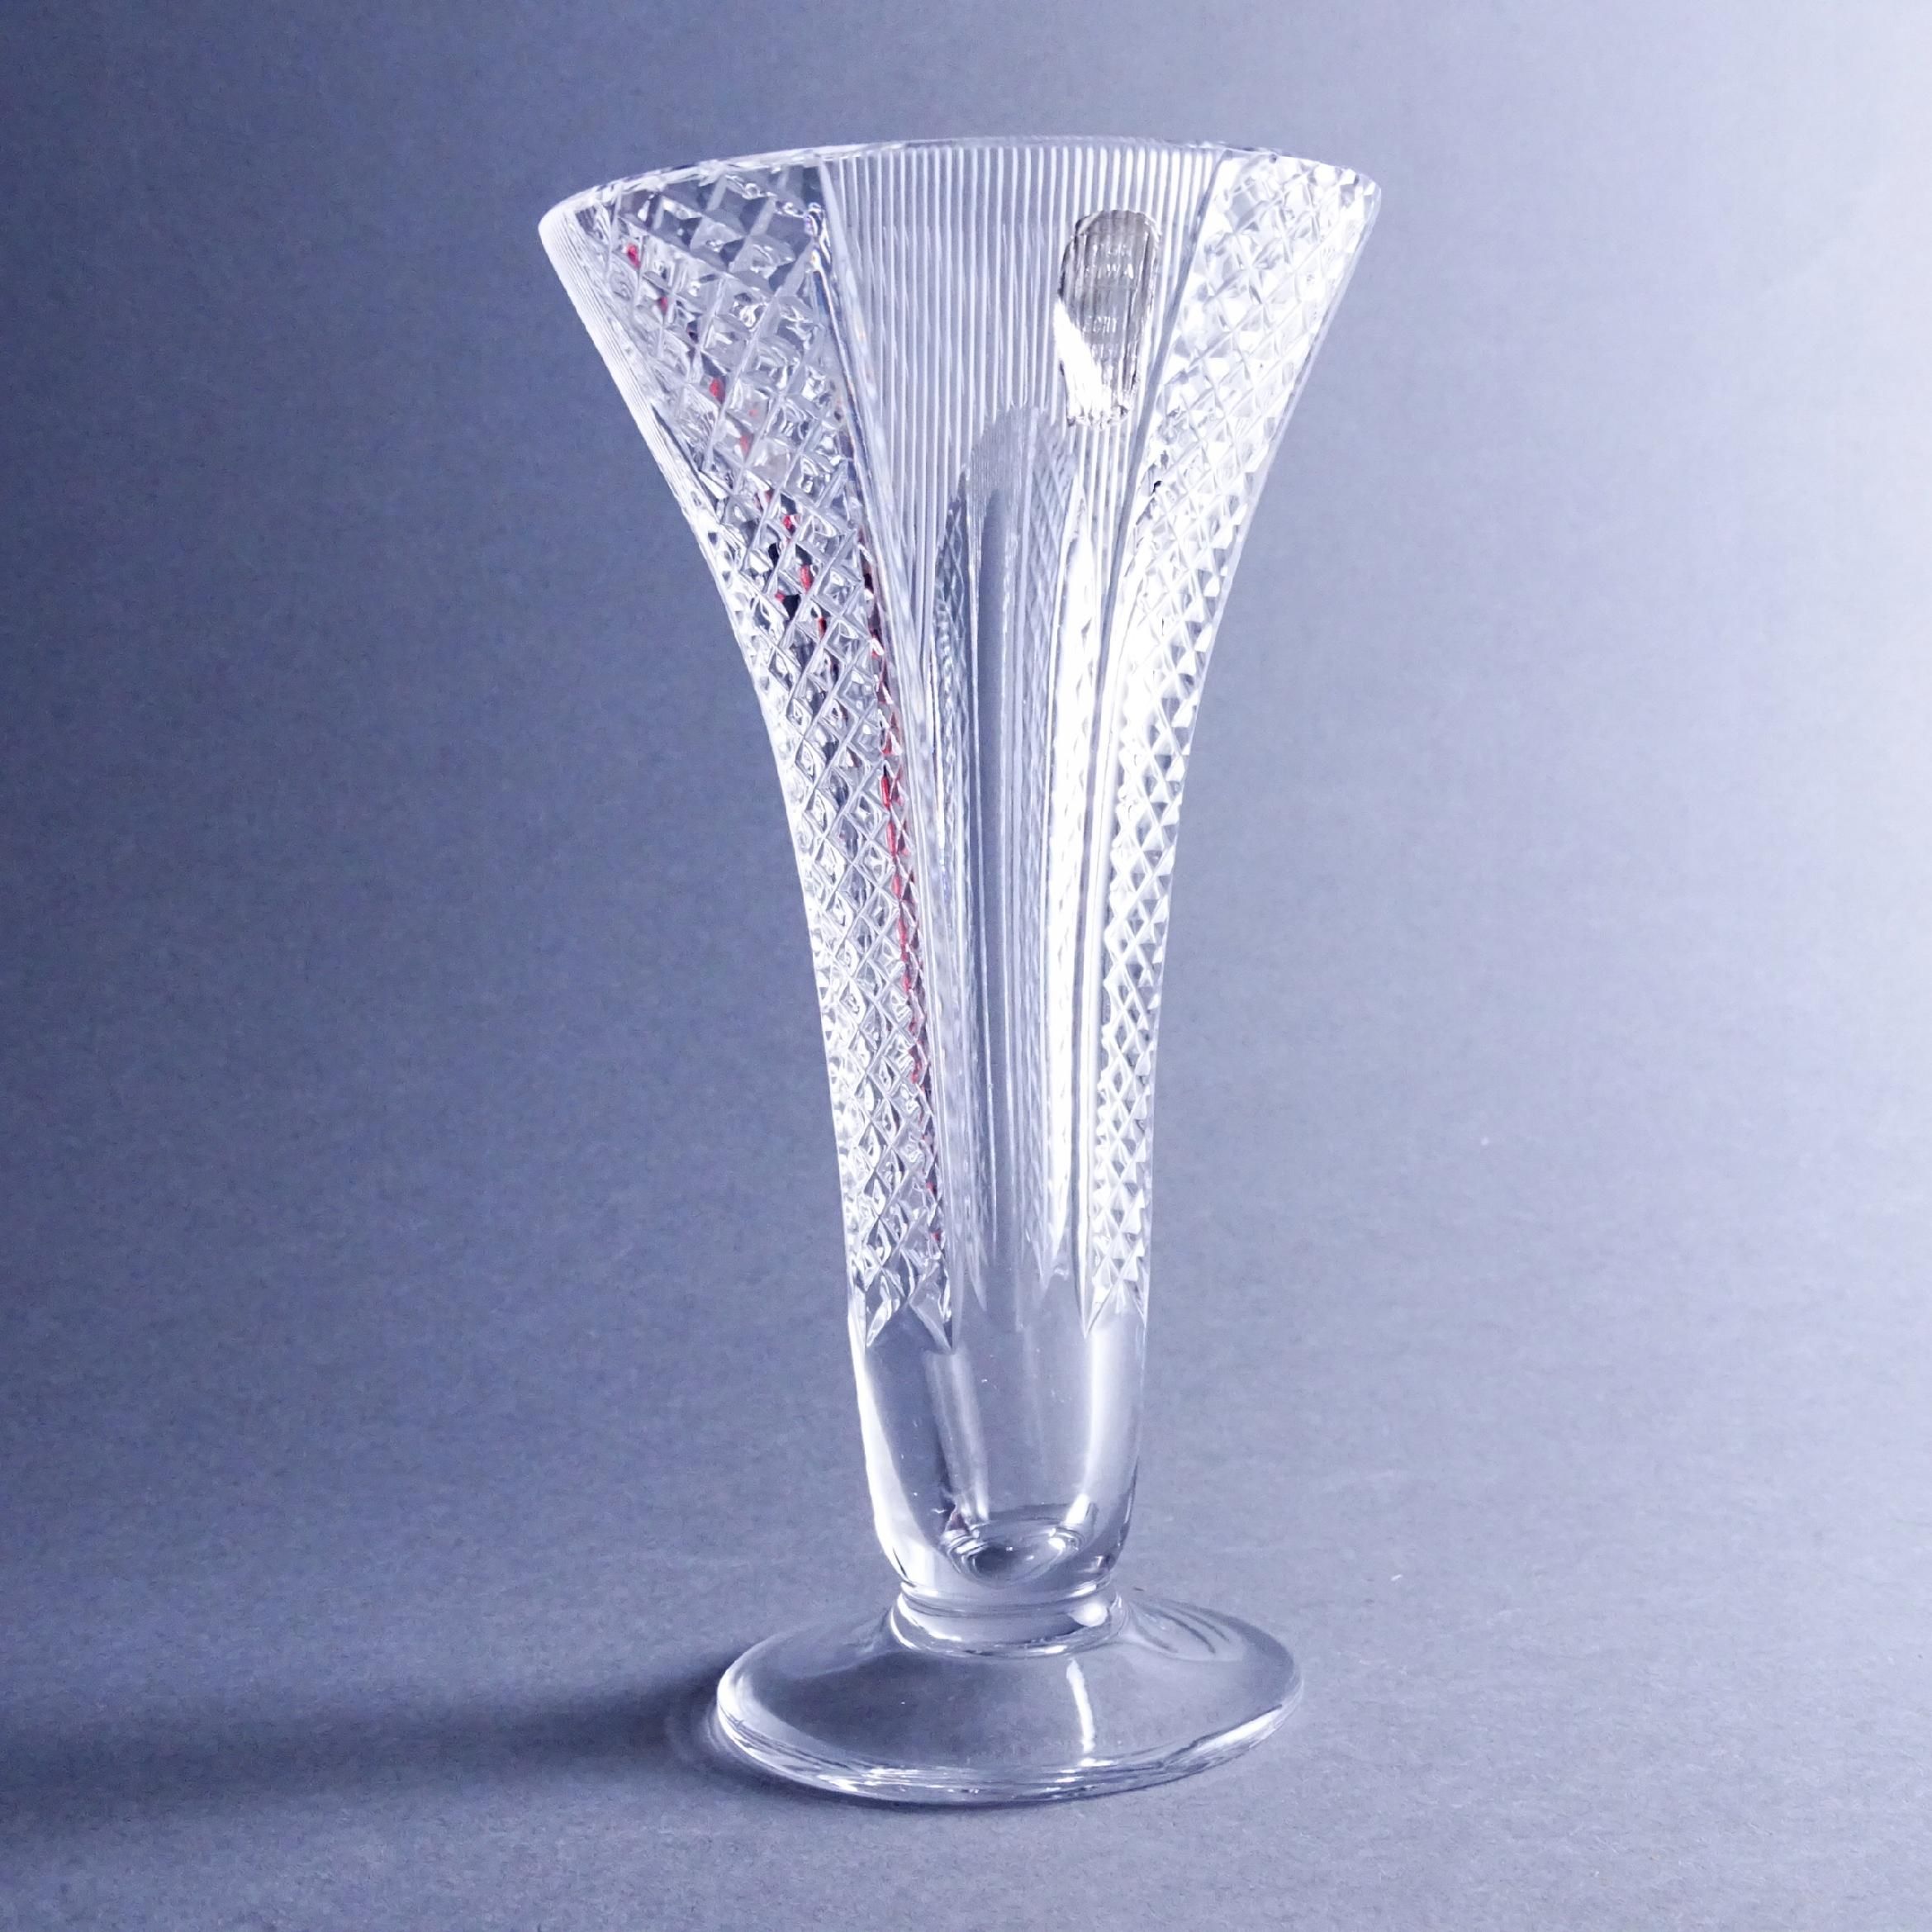 piękny kryształowy szlifowany wazon